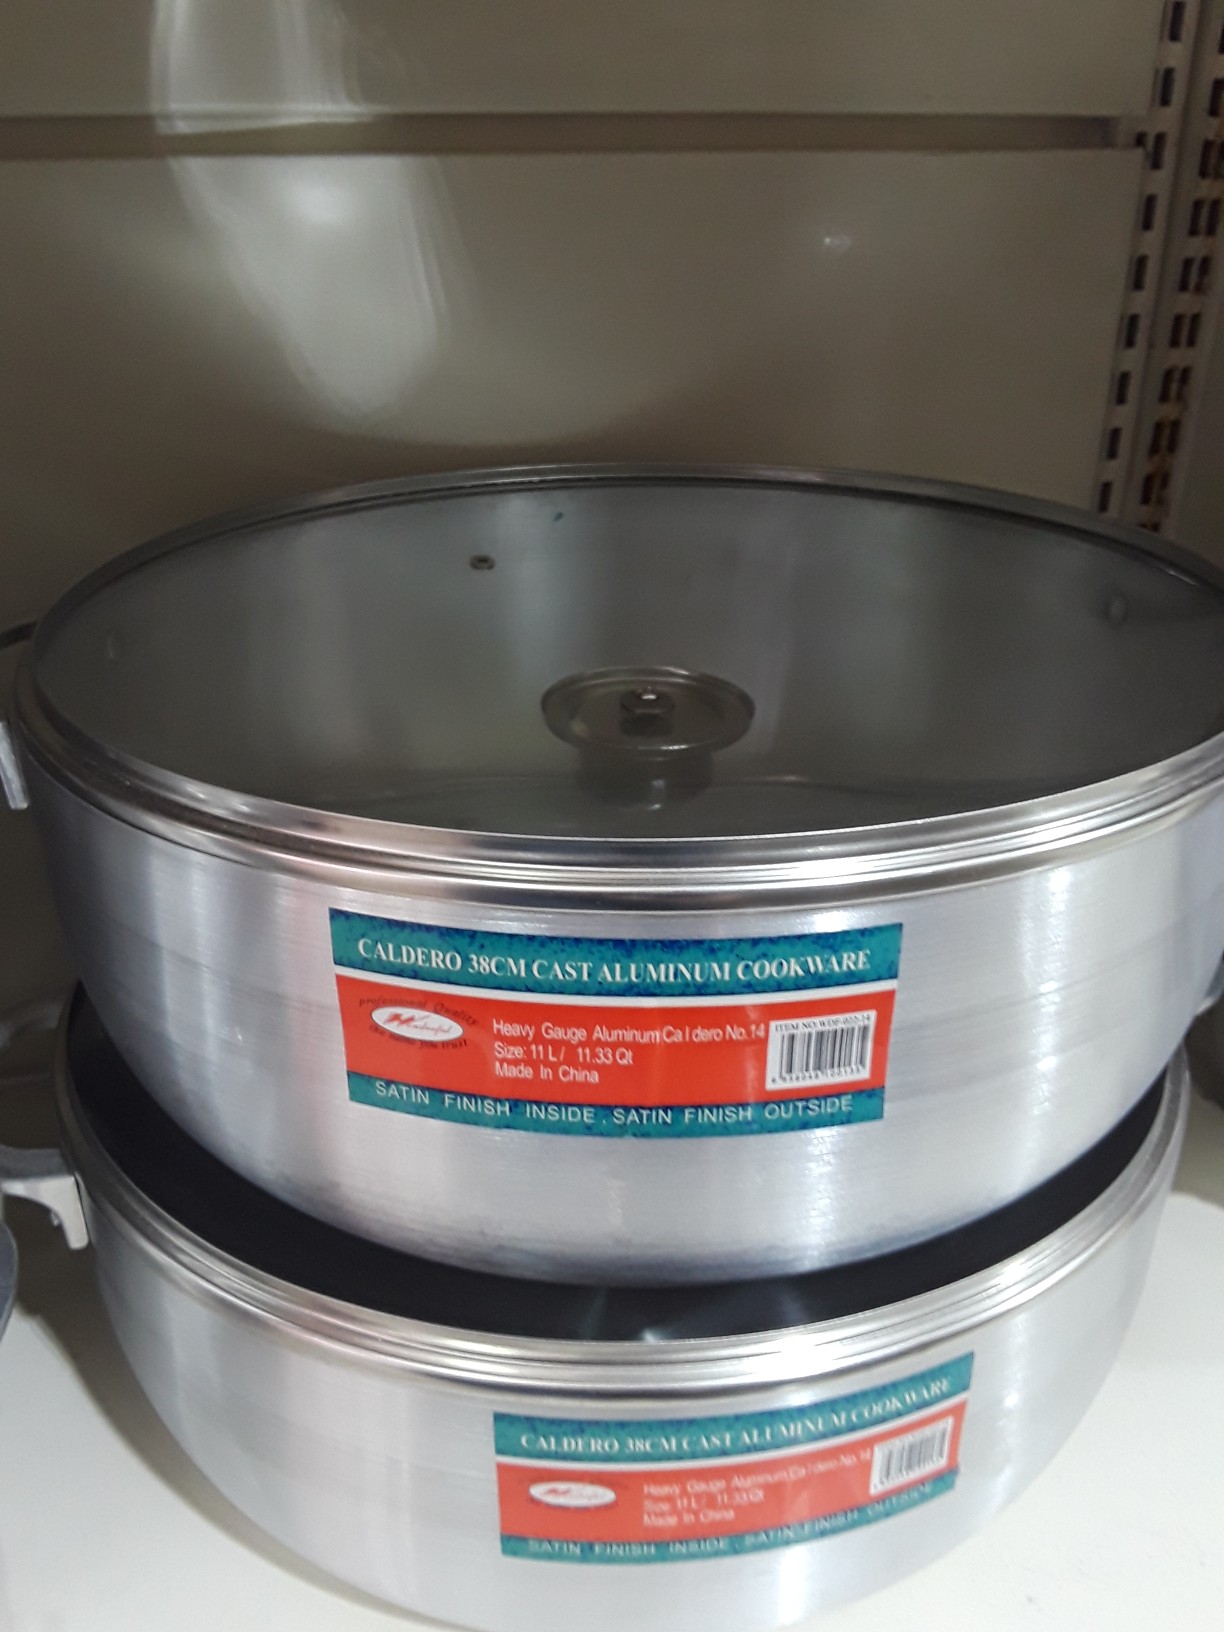 cocina - Cardero d aluminio d 11 libra por tan solo